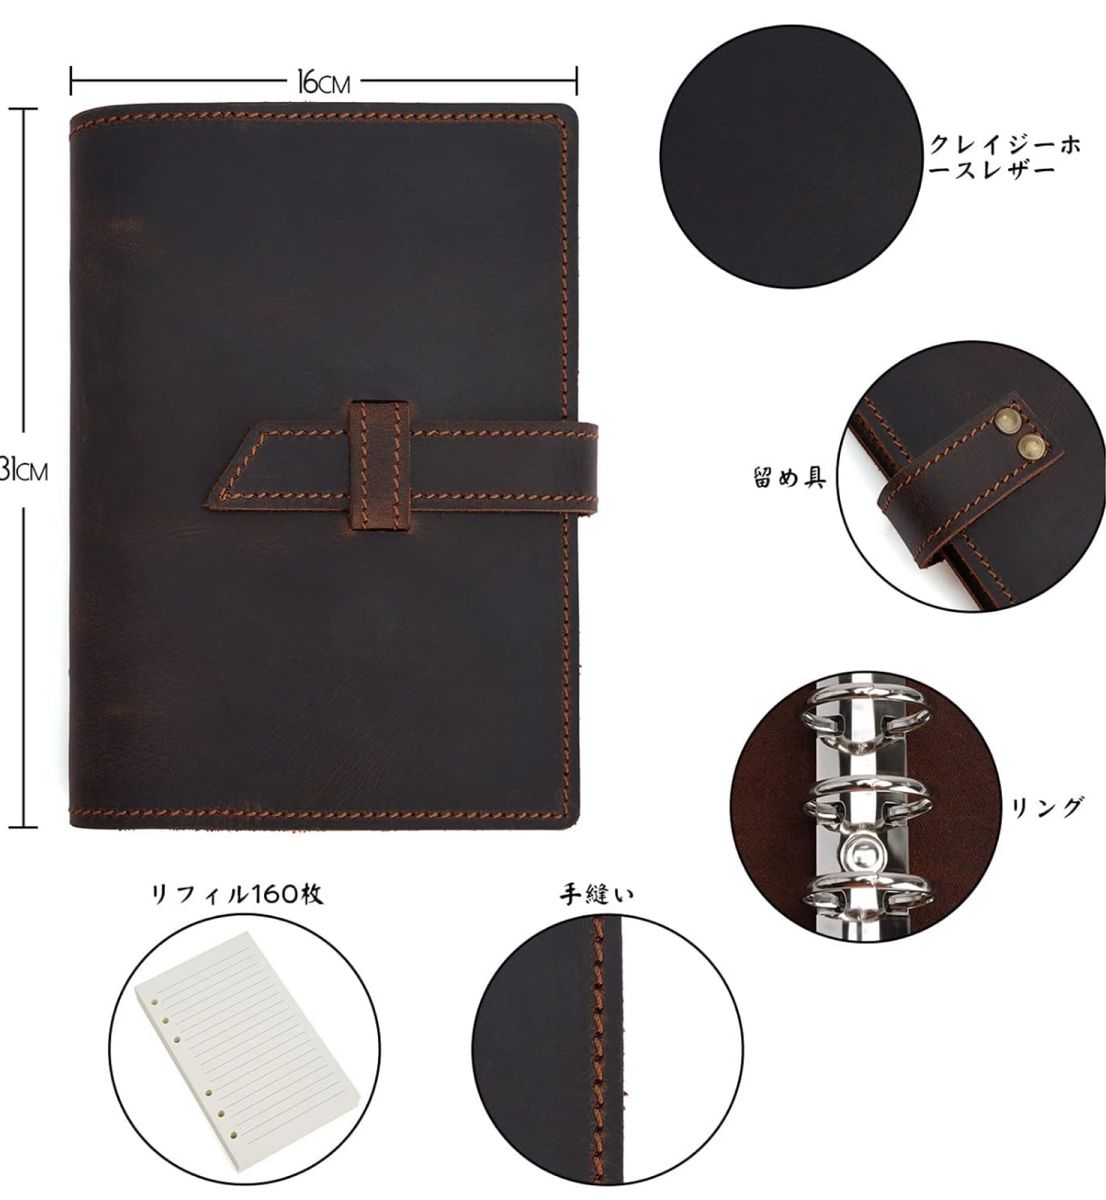 システム手帳 A6サイズ 本革  レザー ノートカバー 手縫い 手作り